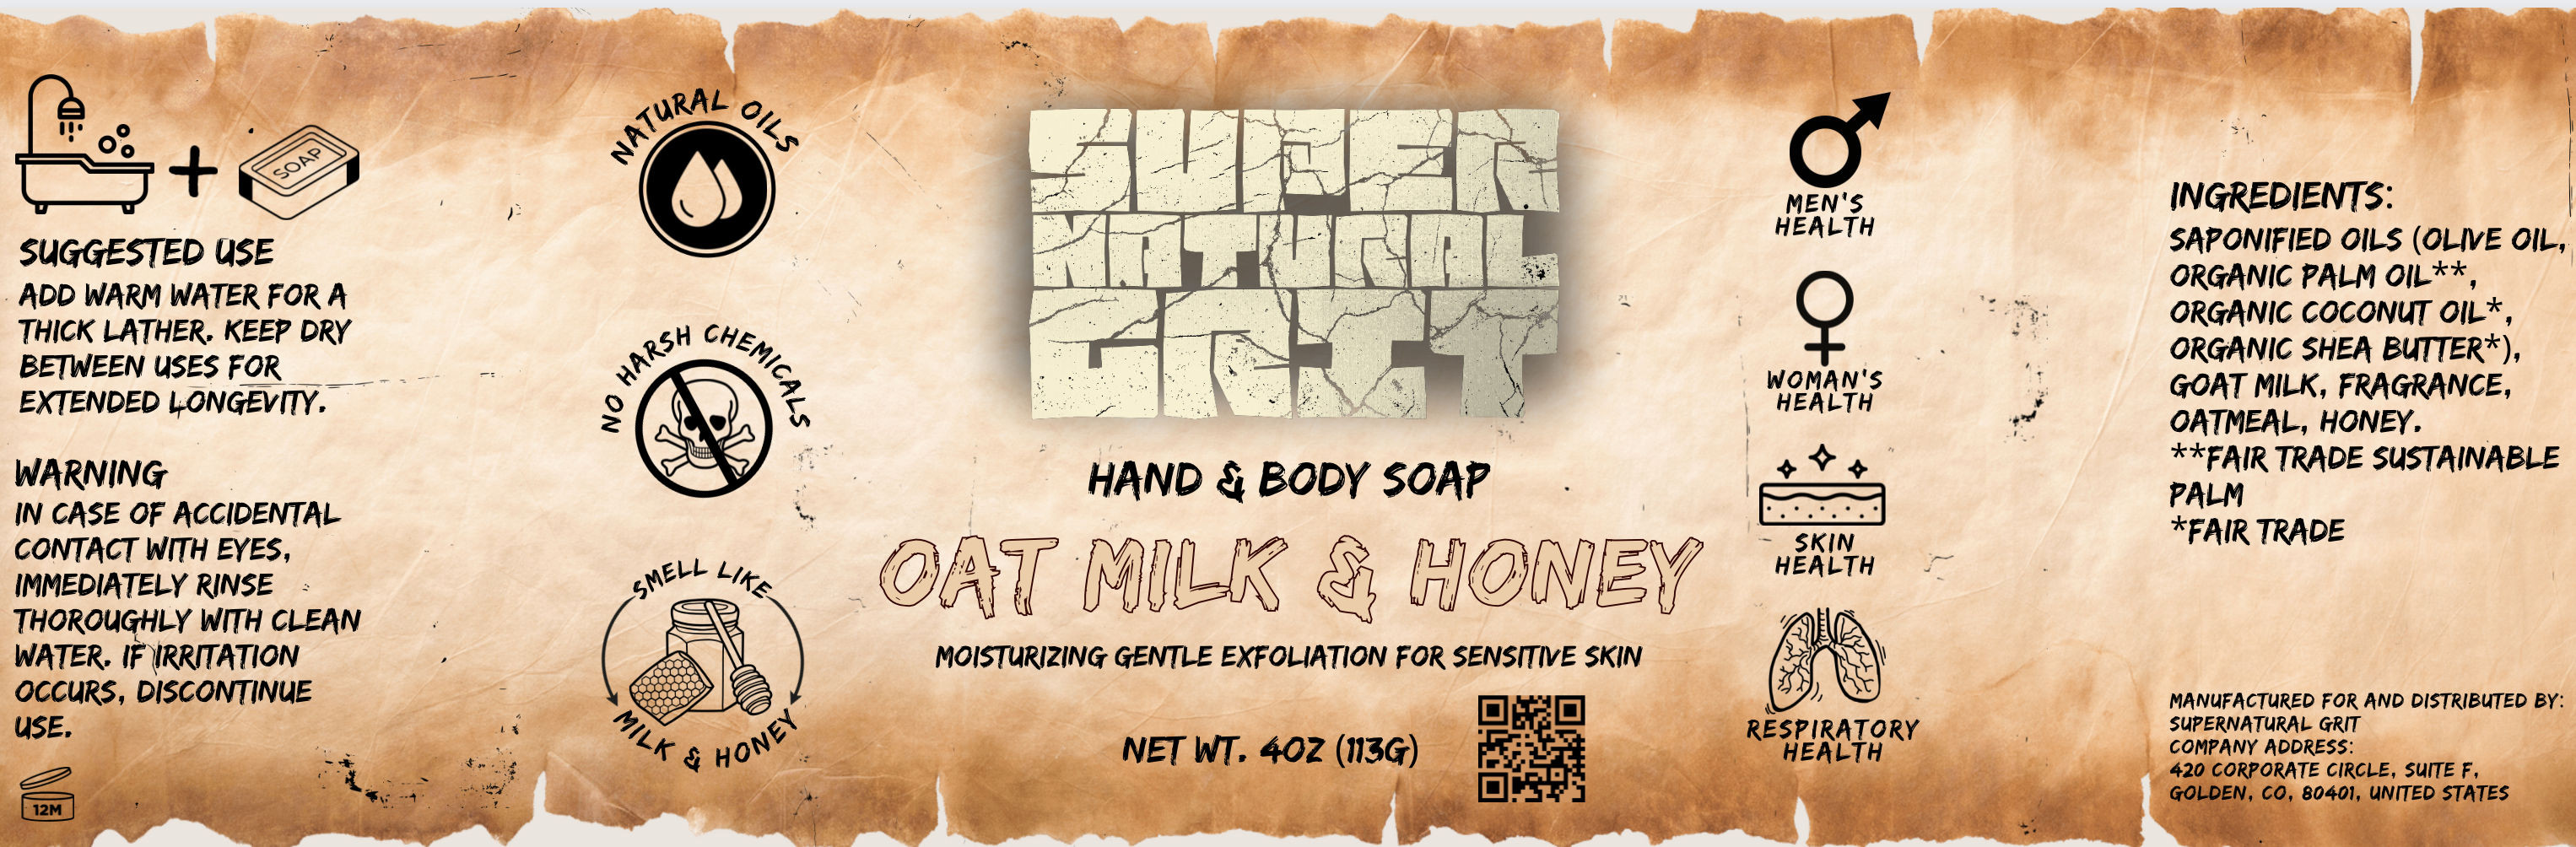 Oat Milk & Honey Soap